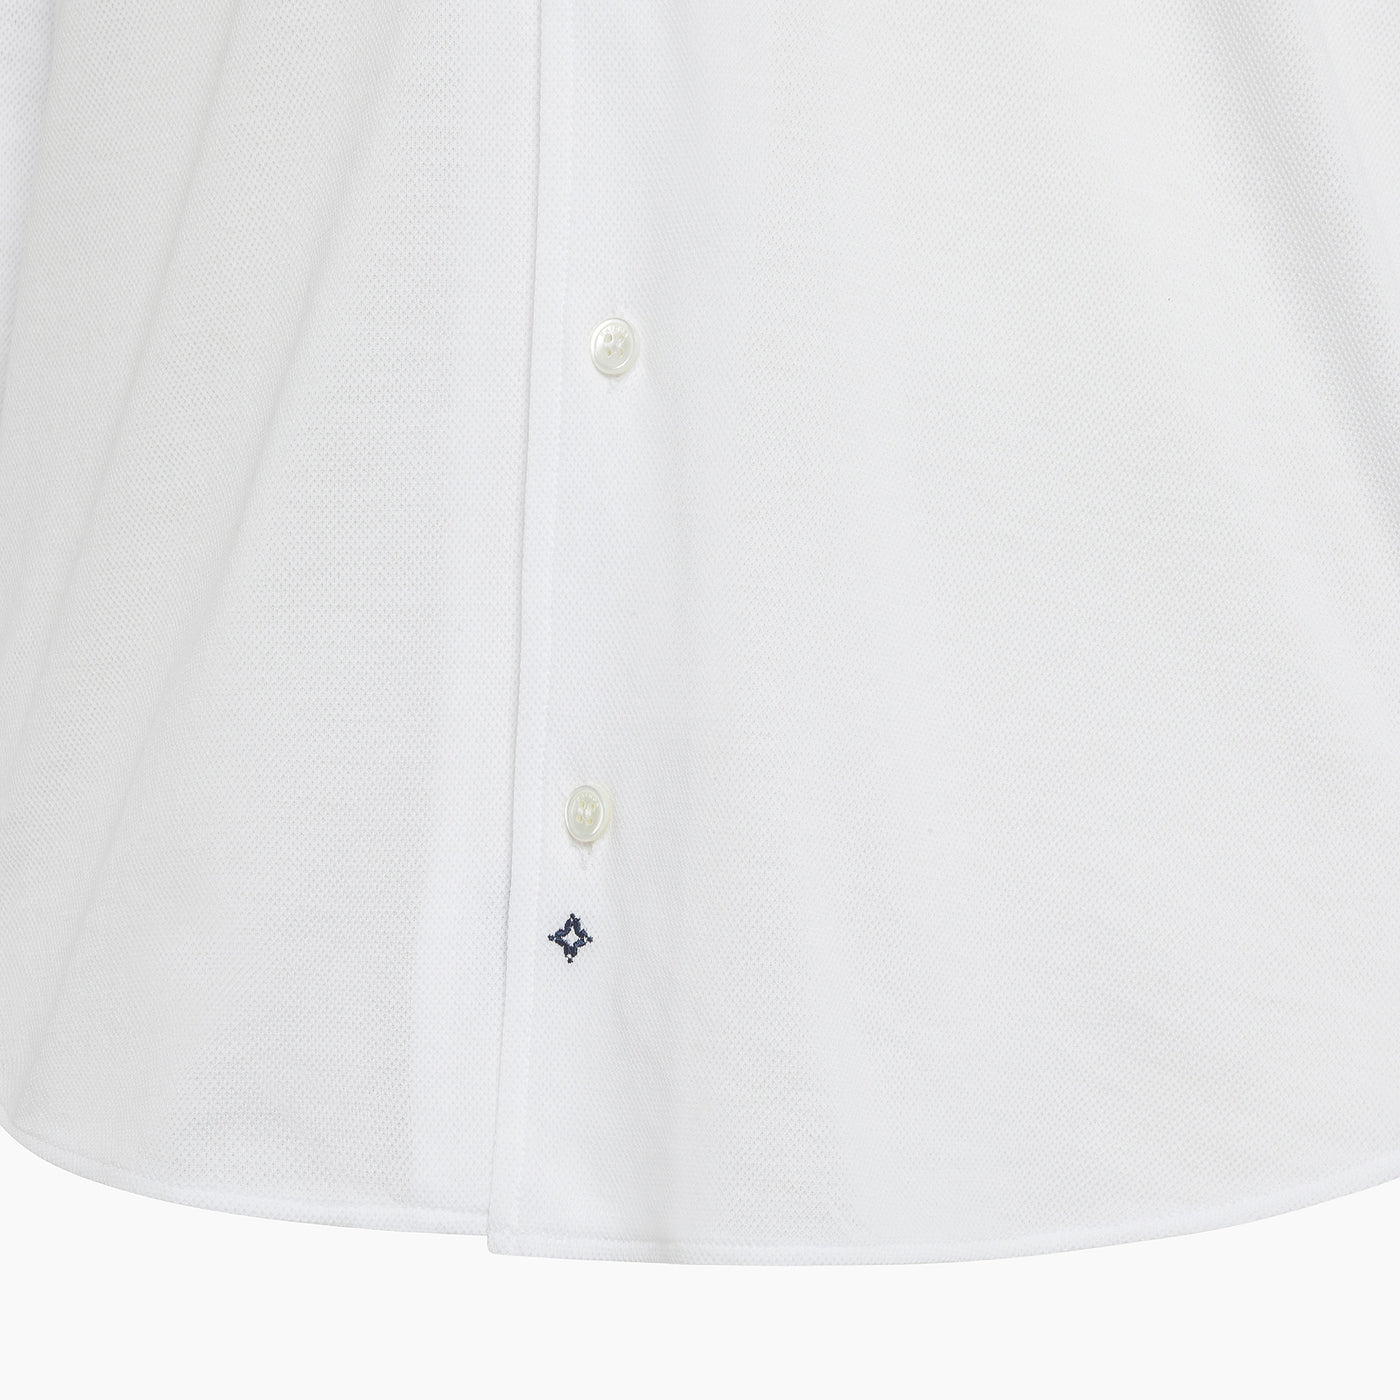 Nihel shirt in Fine Cotton Piquet